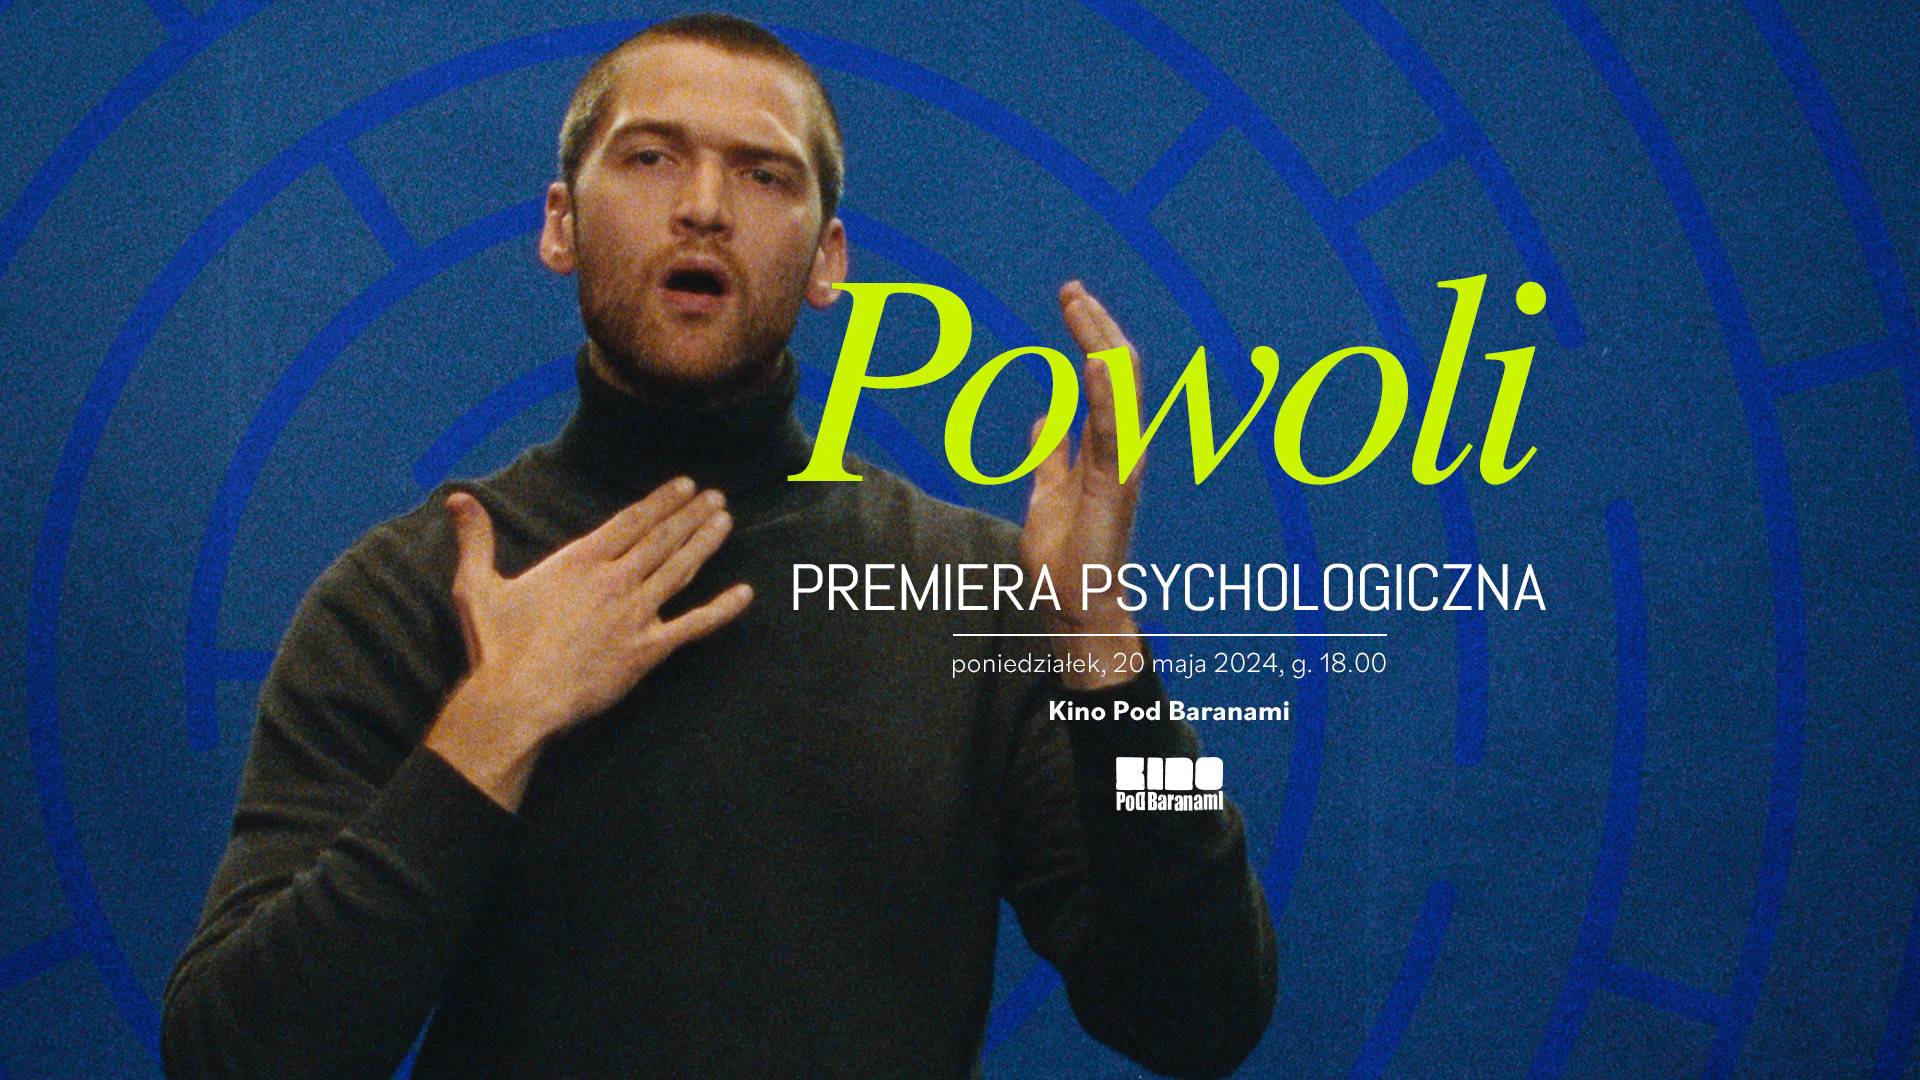 Premiera psychologiczna: film "Powoli", zmysłowa i prowokacyjna opowieść miłosna